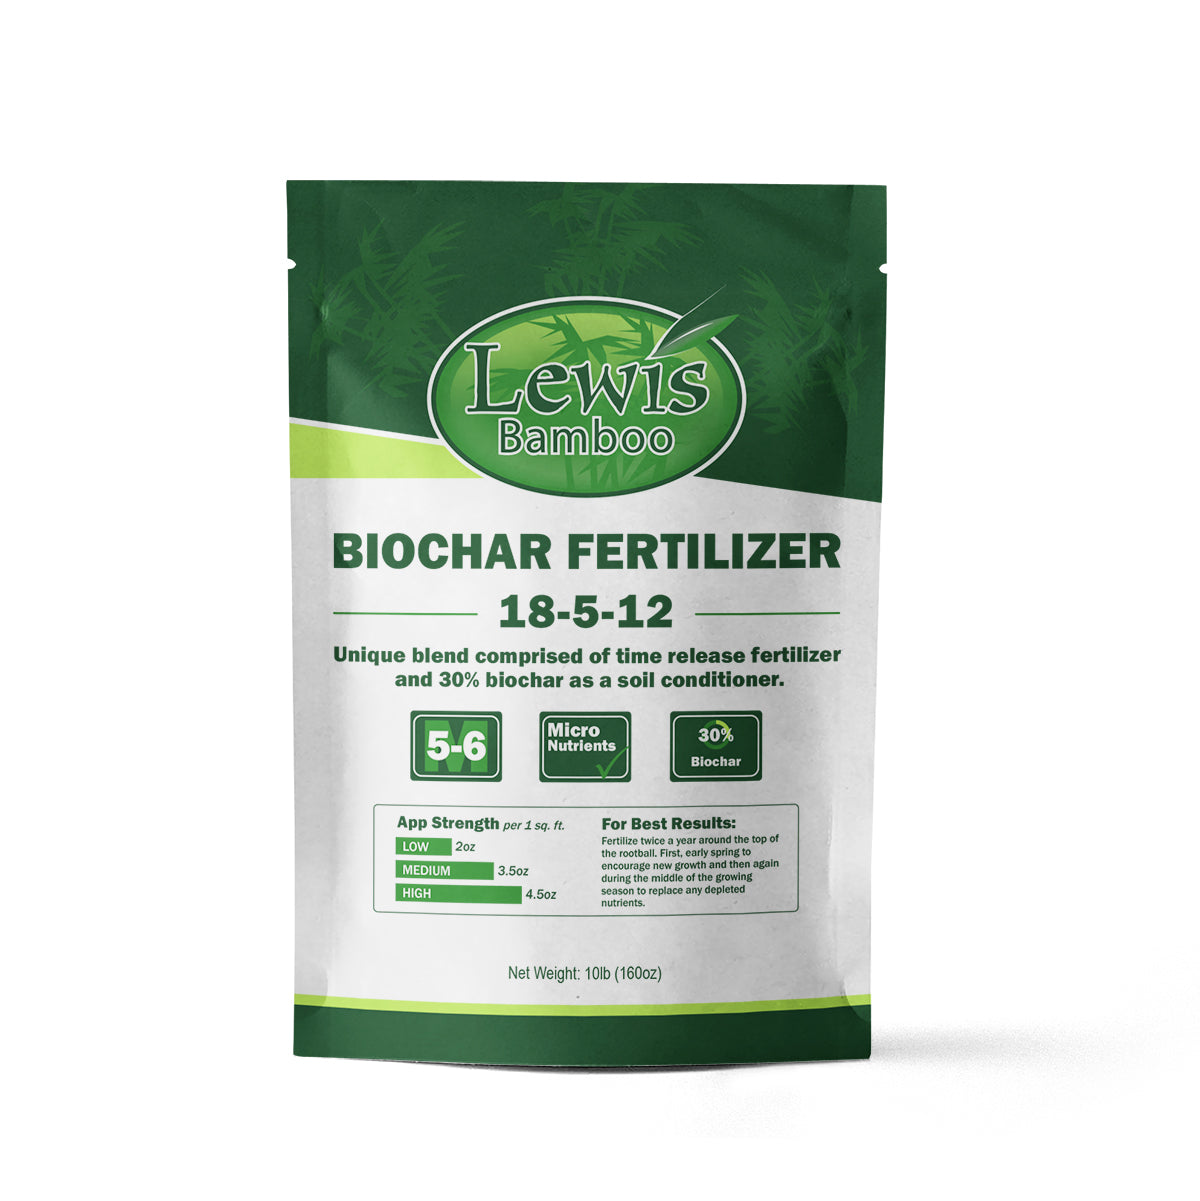 10lb Bag of Biochar Fertilizer by Lewis Bamboo